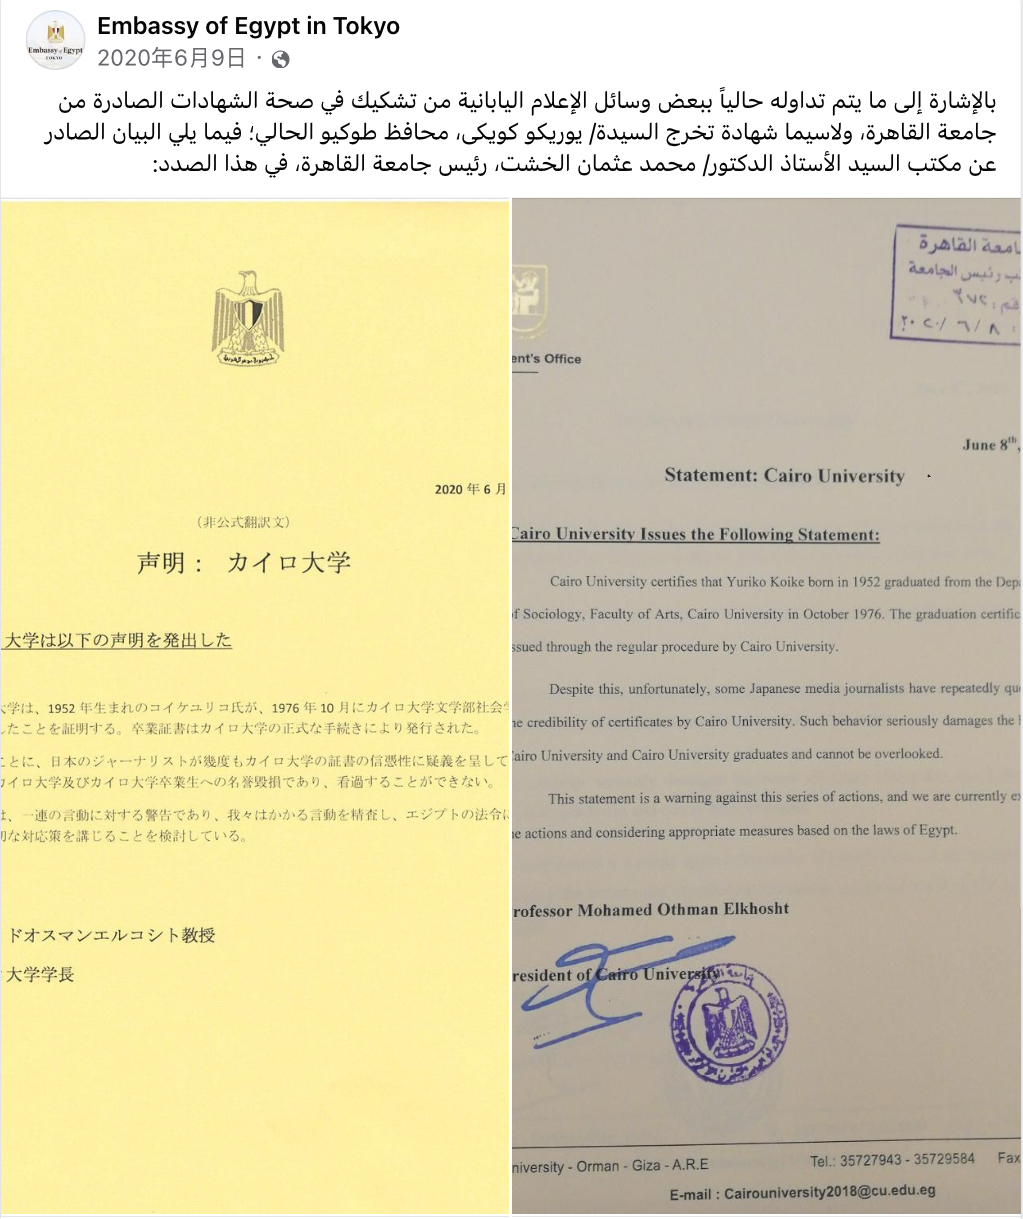 2020年埃及驻日本领事馆公布开罗大学声明力证小池百合子毕业。